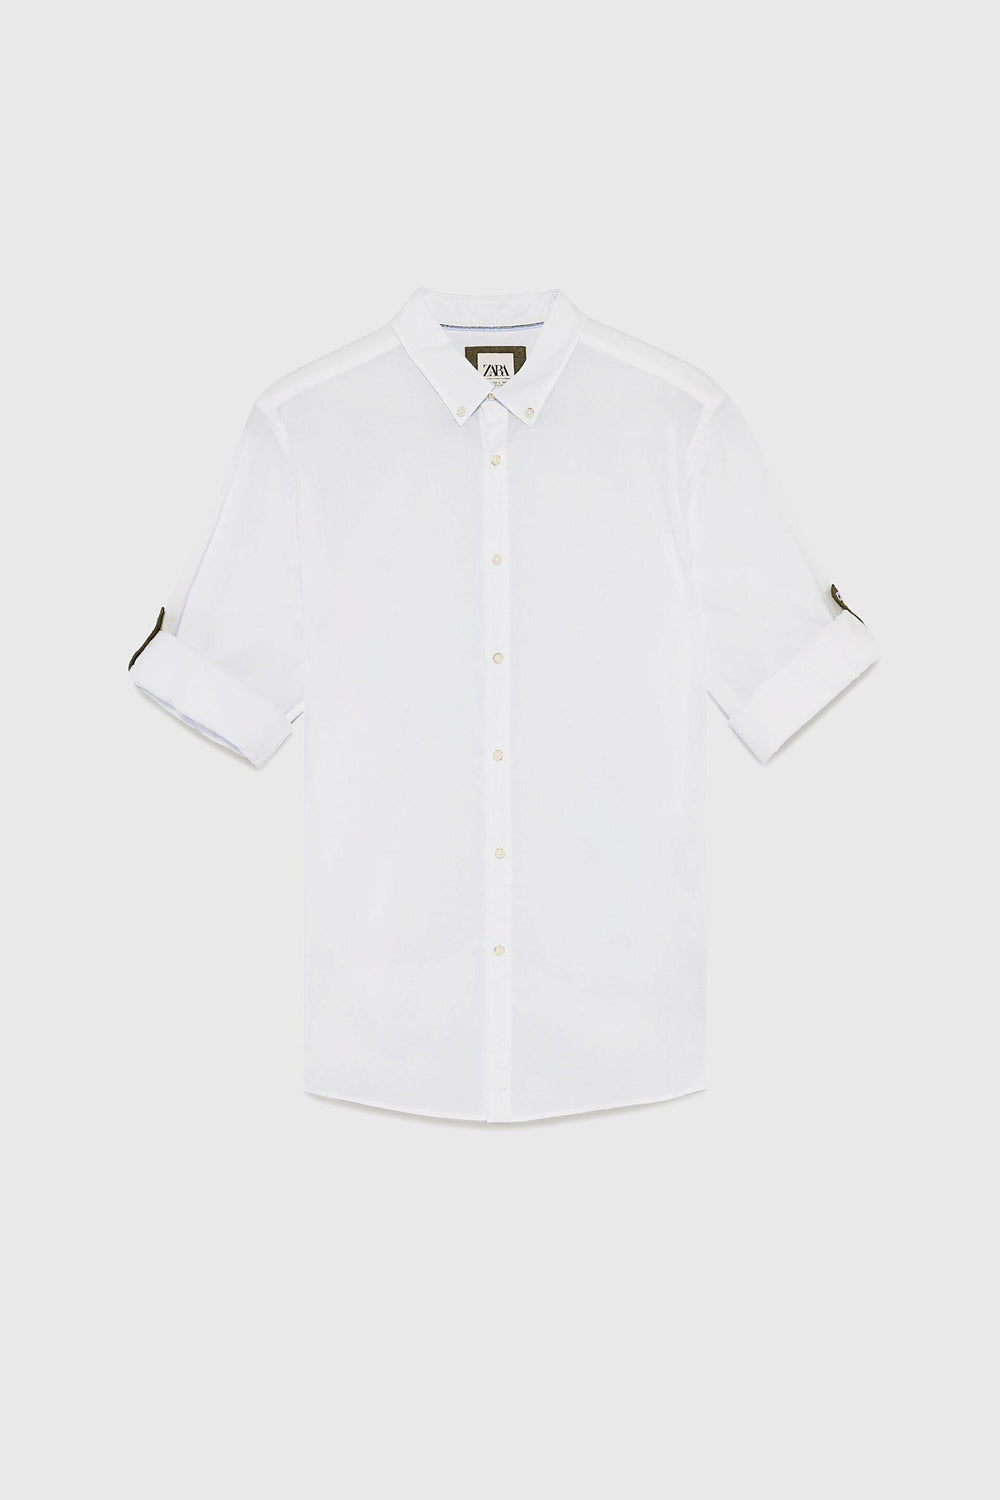 ZaraMan Plain F/S Casual Shirt 6048/400/250